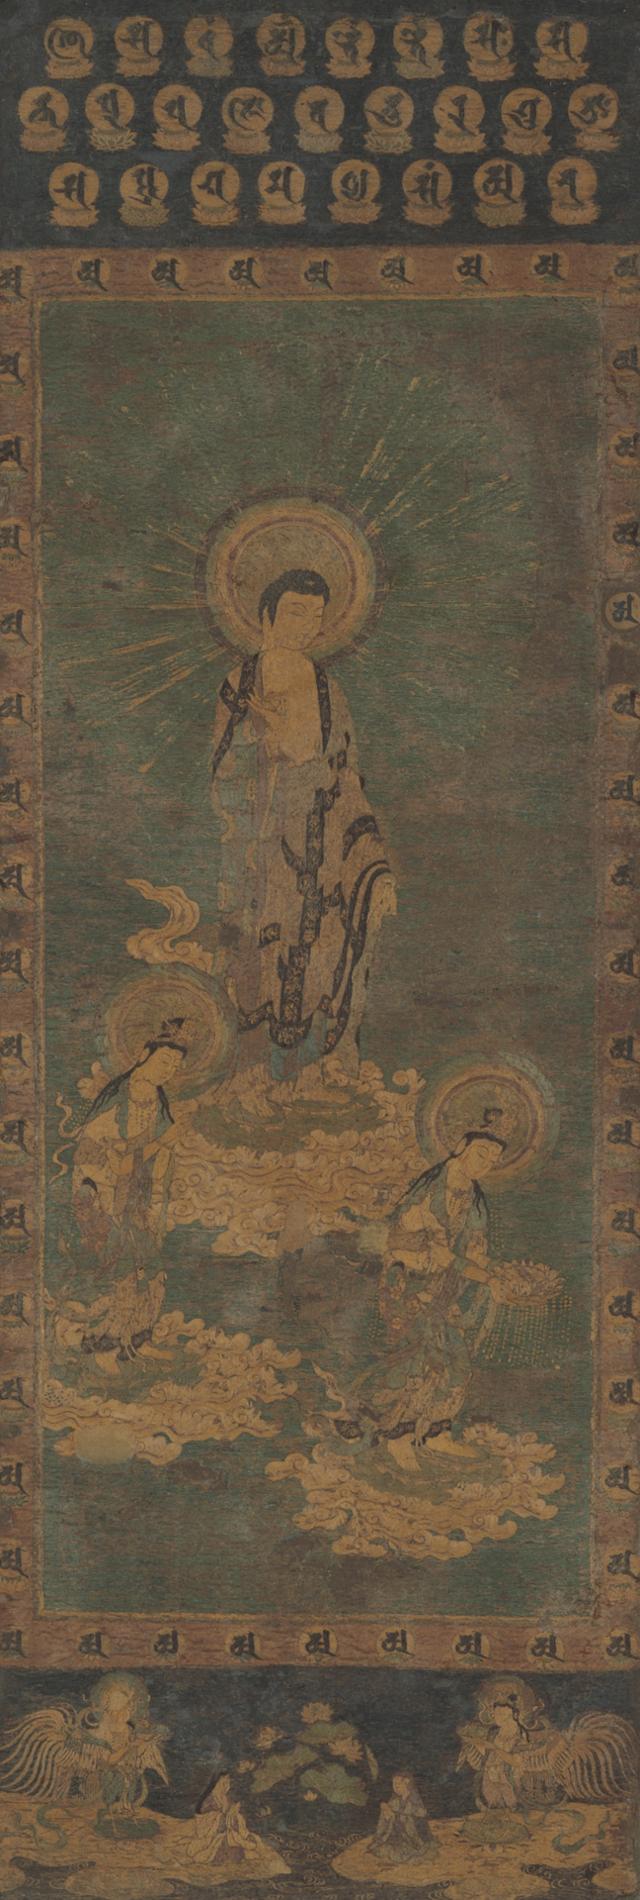 '자수 아미타여래삼존내영도', 일본 13~14세기, 호곤지 소장. 호암미술관 제공